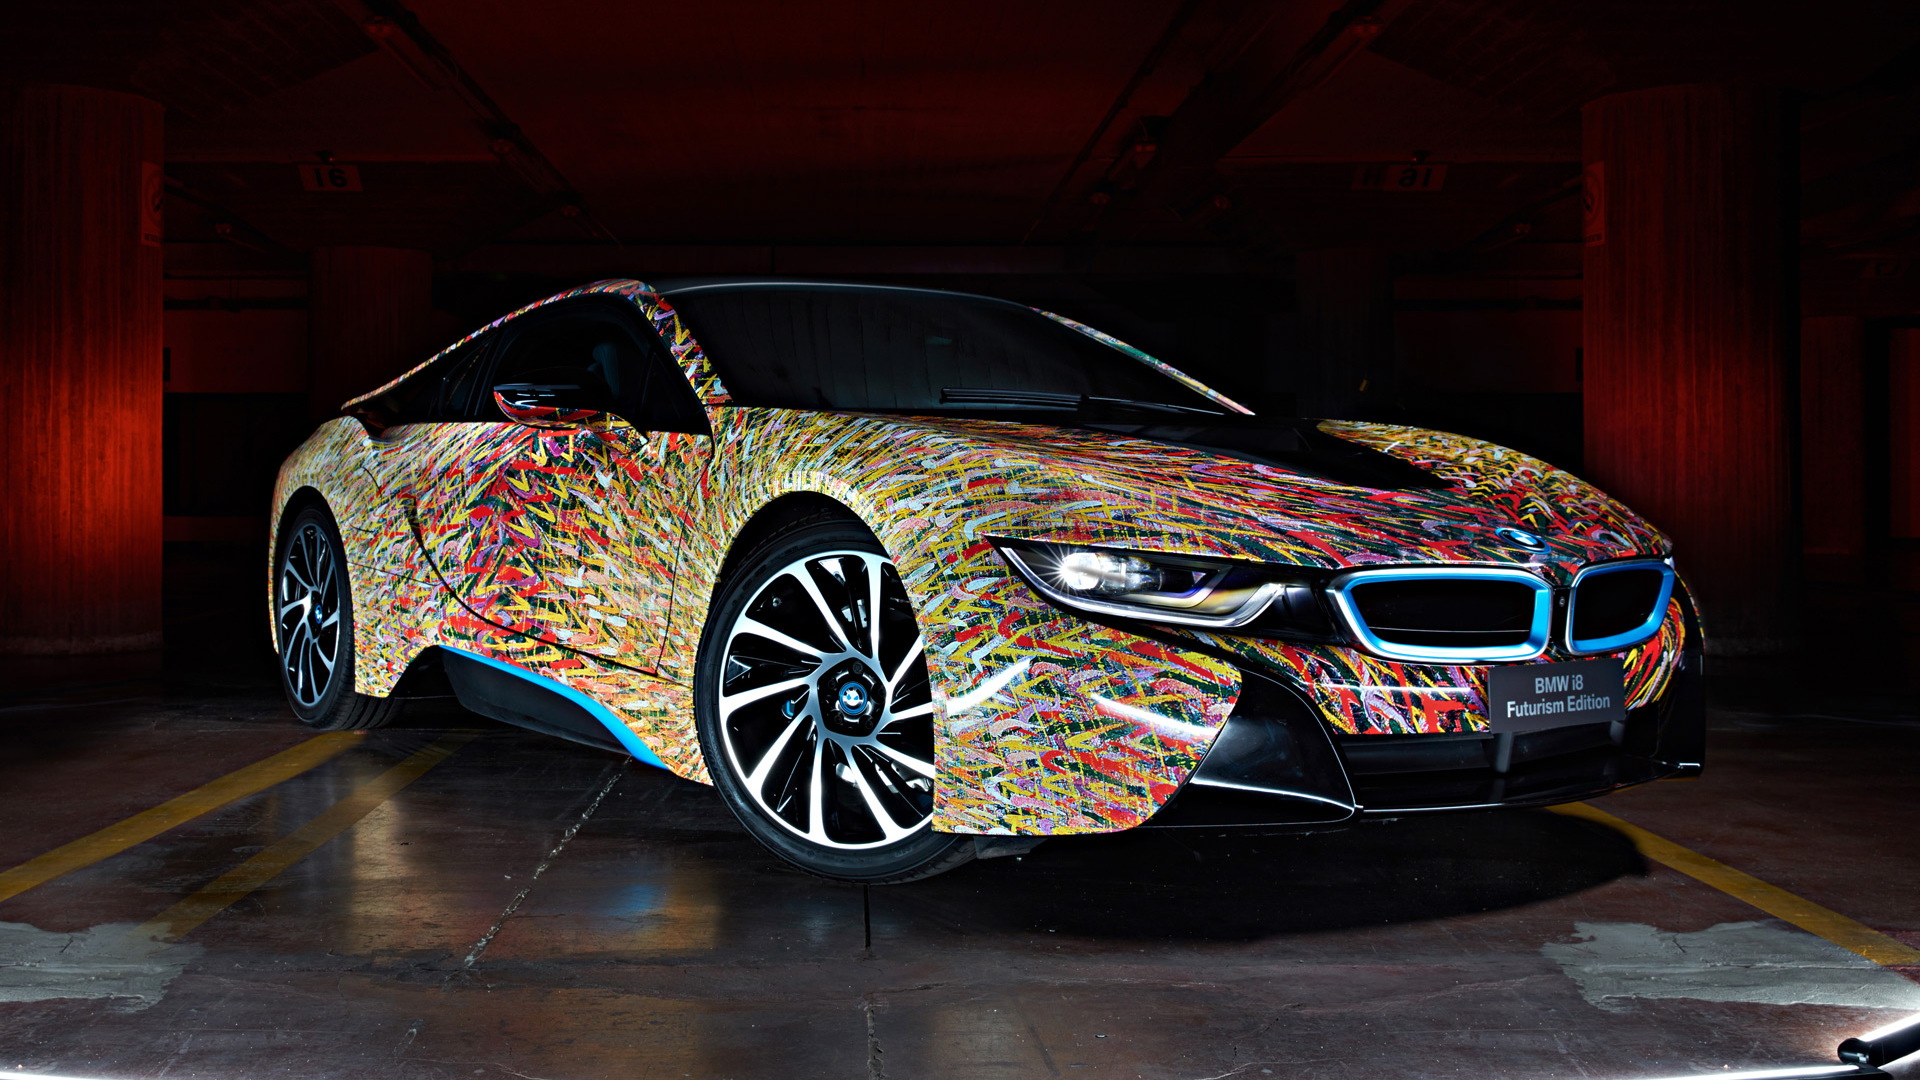 2016 BMW i8 Futurism Edition by Garage Italia Customs